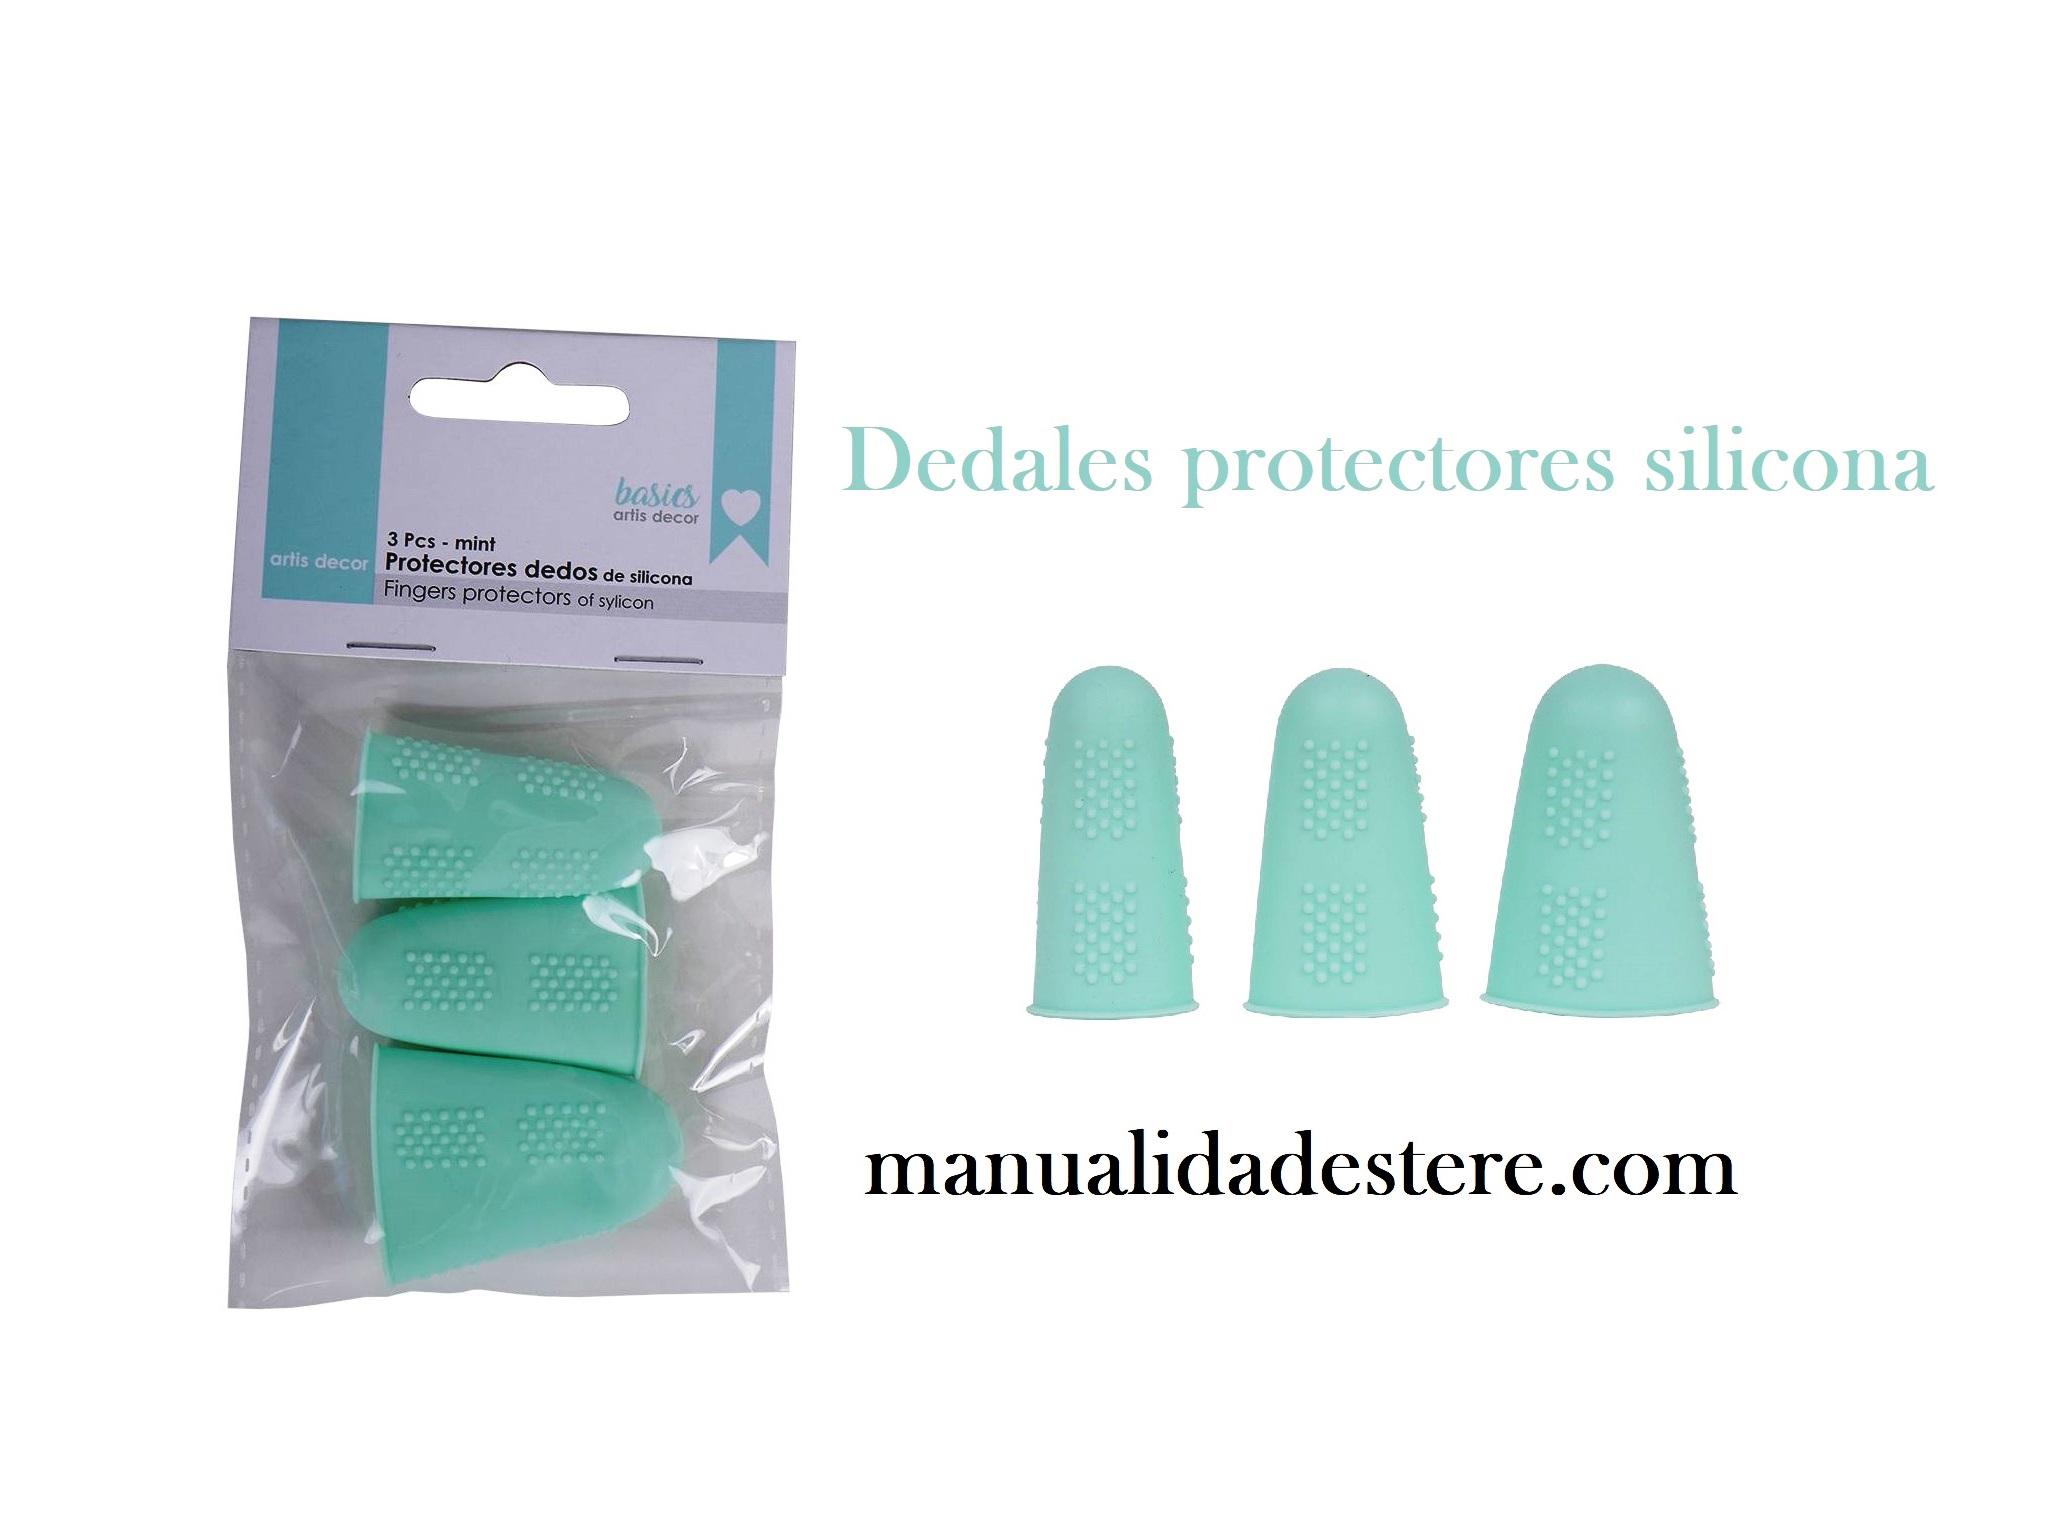 Dedal de silicona protector para dedos